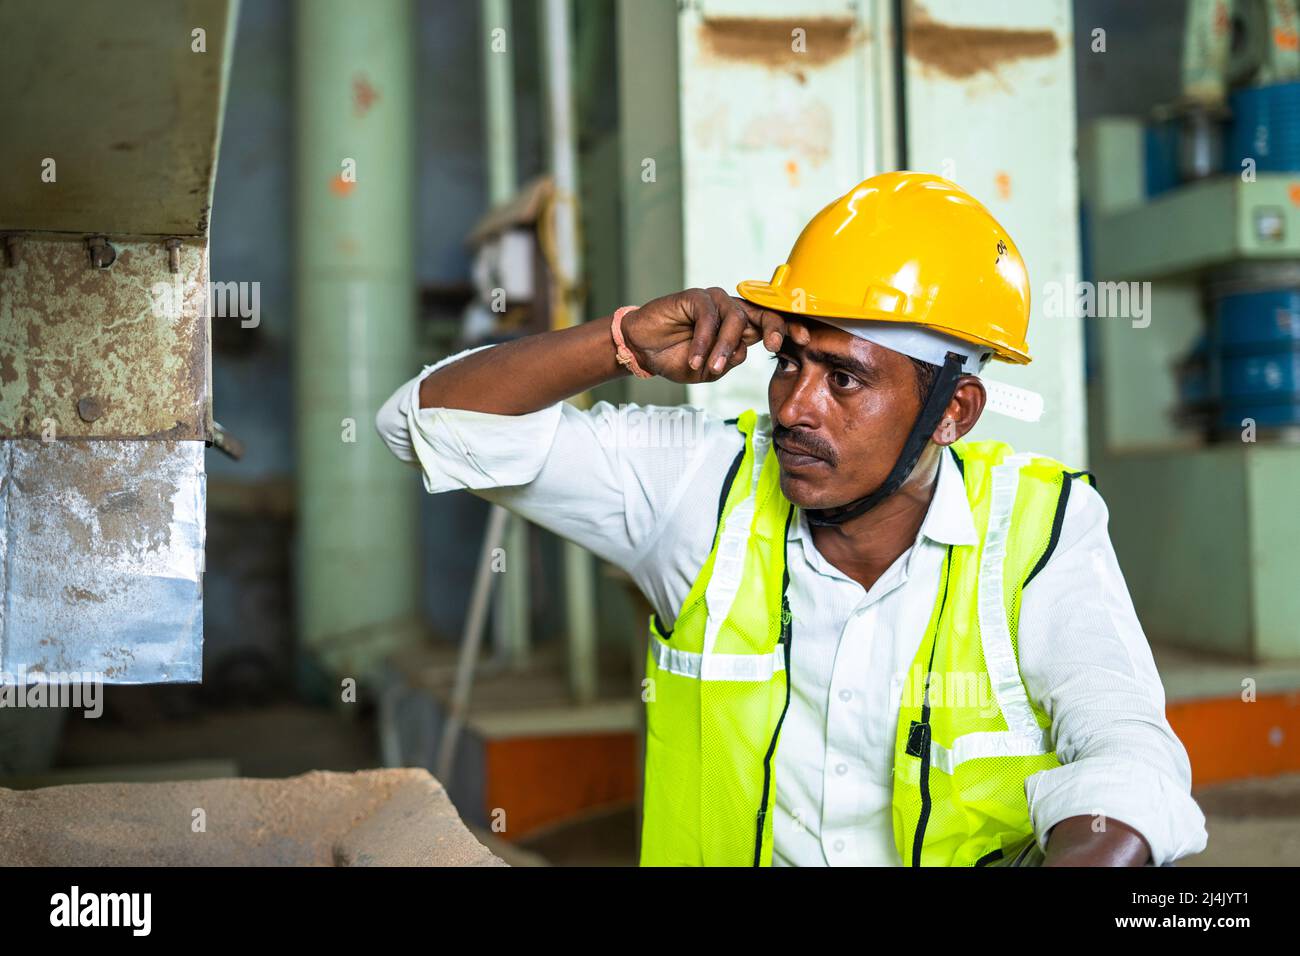 Industriearbeiter beschäftigt vor der Maschine arbeiten - Konzept der manuellen Arbeit, fleißig und blue collar Jobs Stockfoto